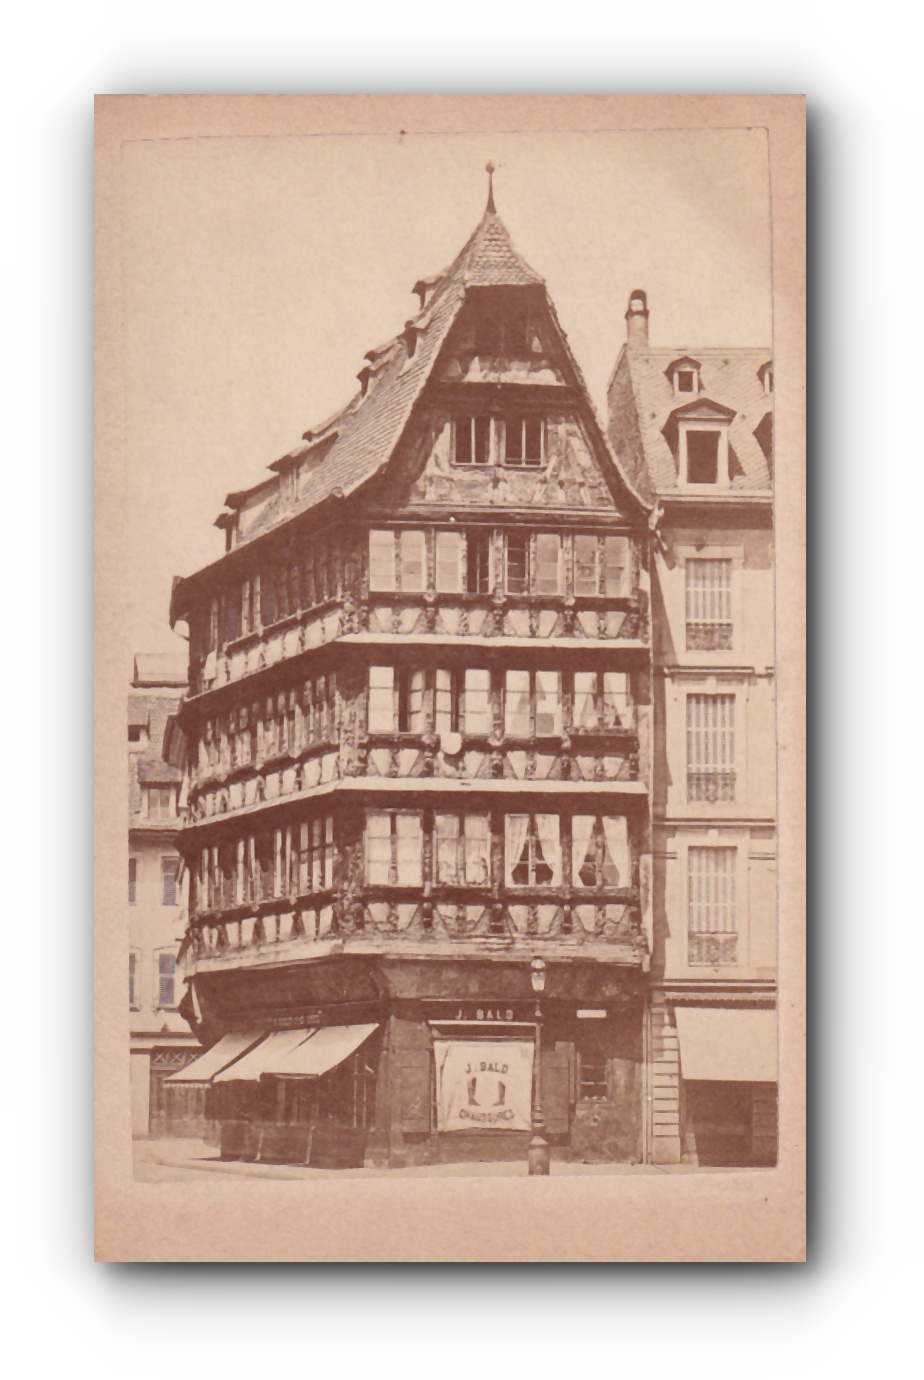 - Ältestes Haus am Münsterplatz - Hier soll Guttenberg gewohnt haben .